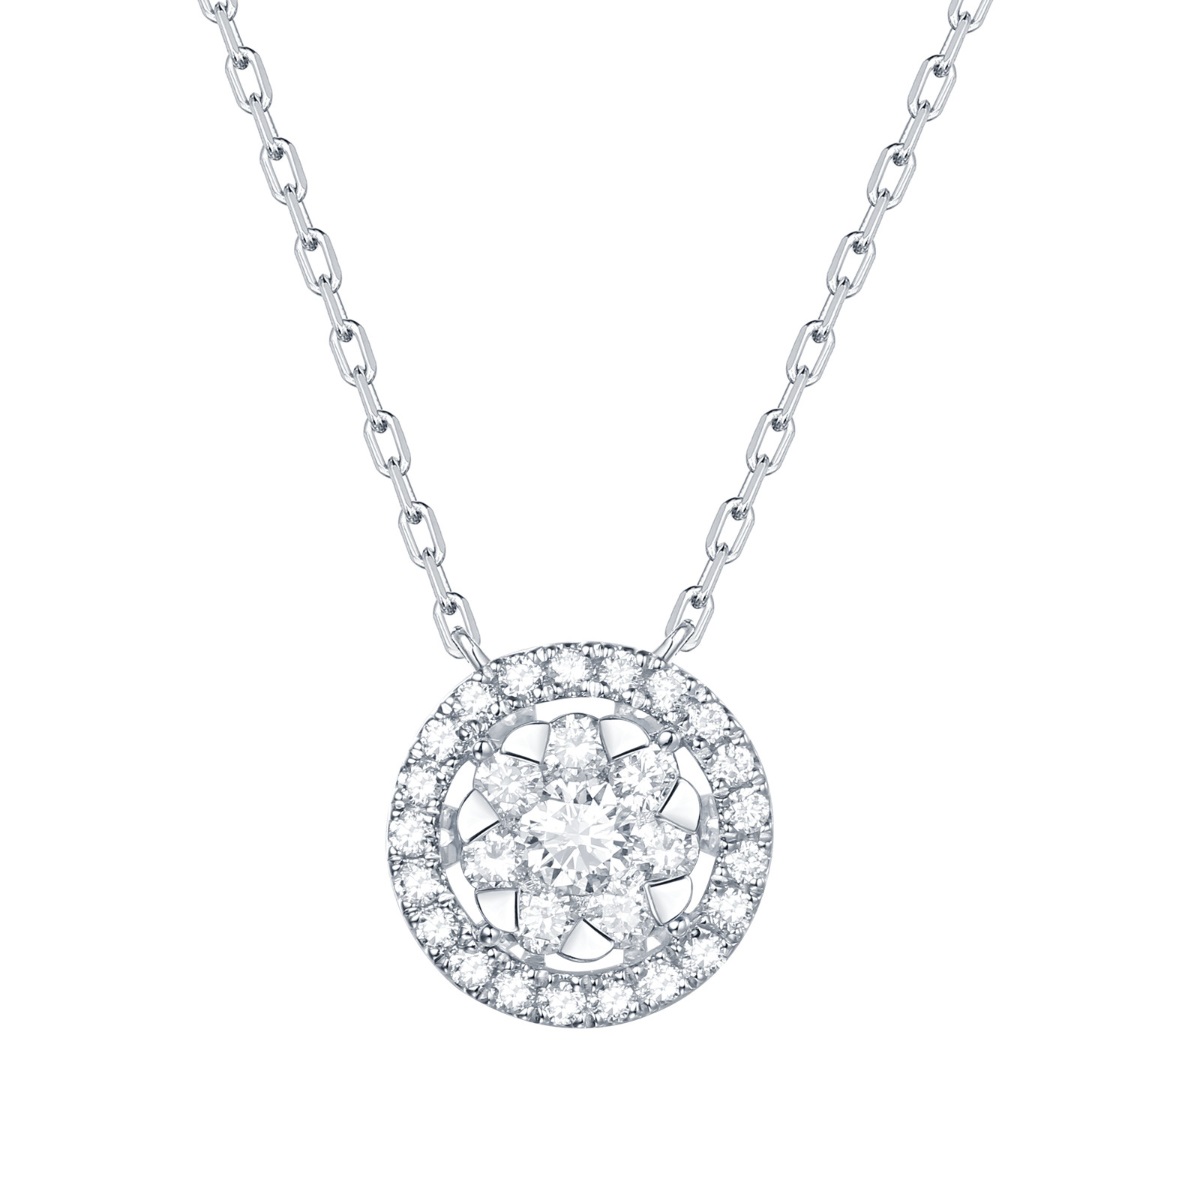 NL36370WHT – 18K White Gold Diamond Necklace, 0.42 TCW